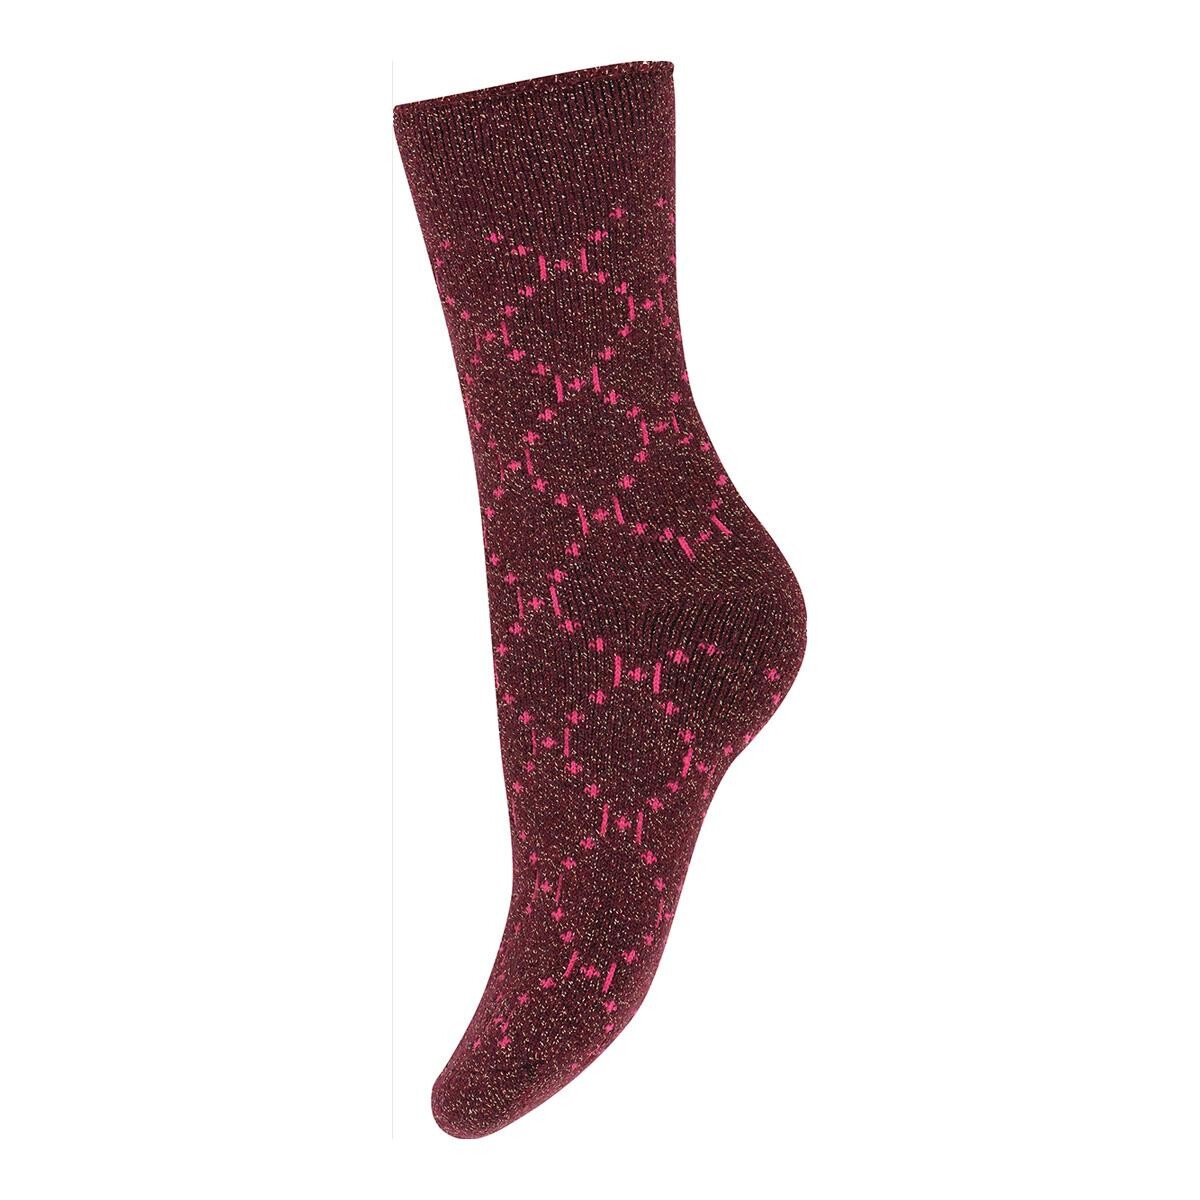 #1 - Hype The Detail Logo Cosy Socks 37344 9003 Rød, 37-41, Størrelse: 37-41, Farve: Rød, Dame